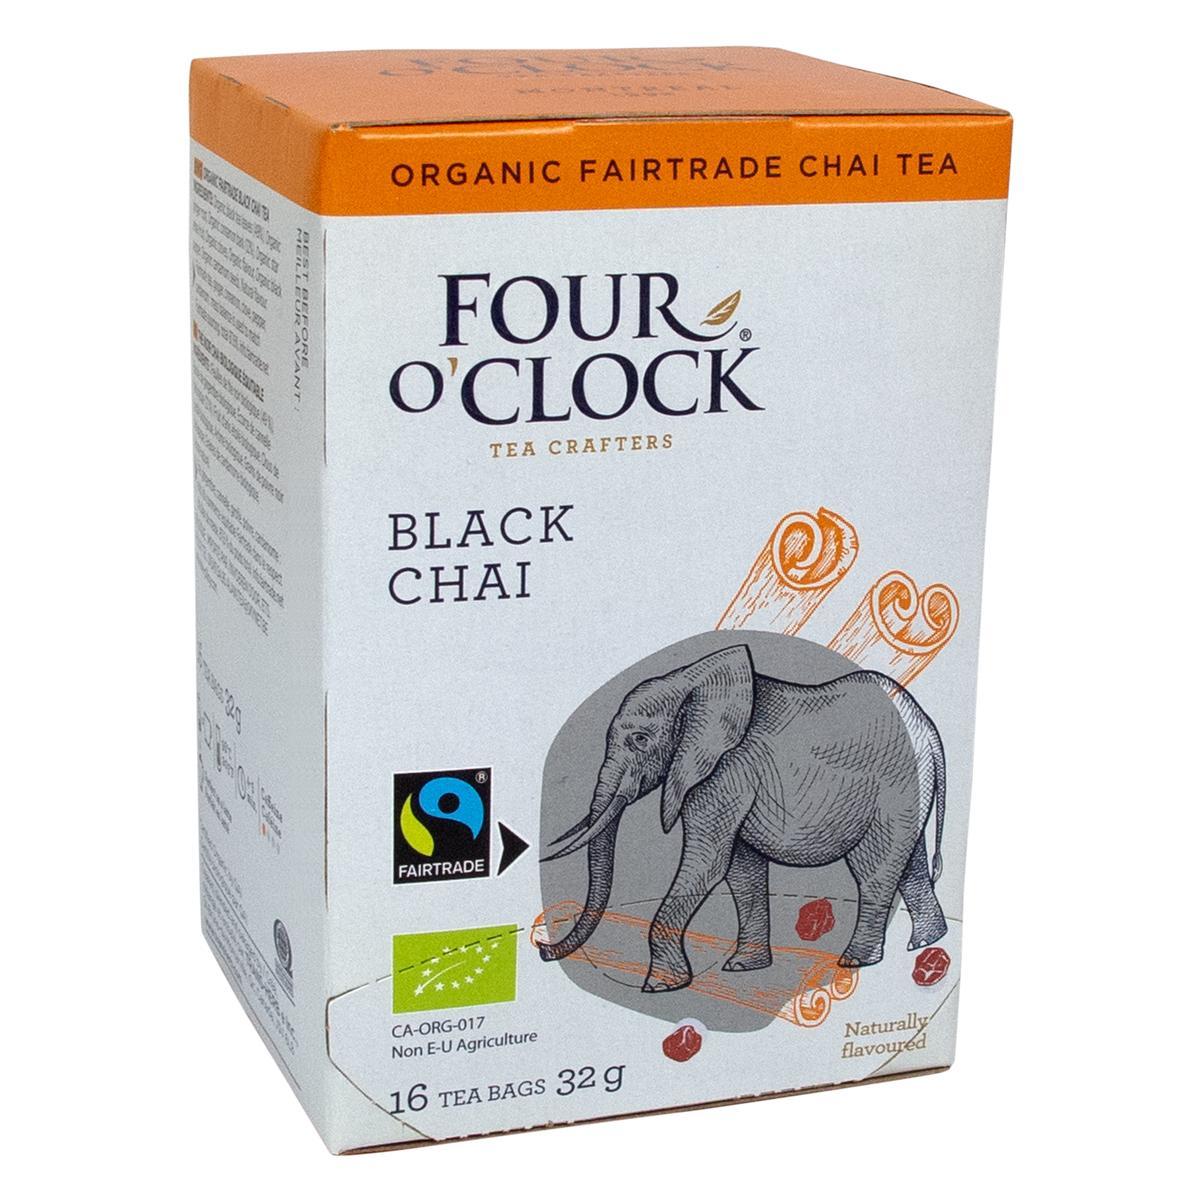 Four O’Clock's Four O'Clock BLACK CHAI'